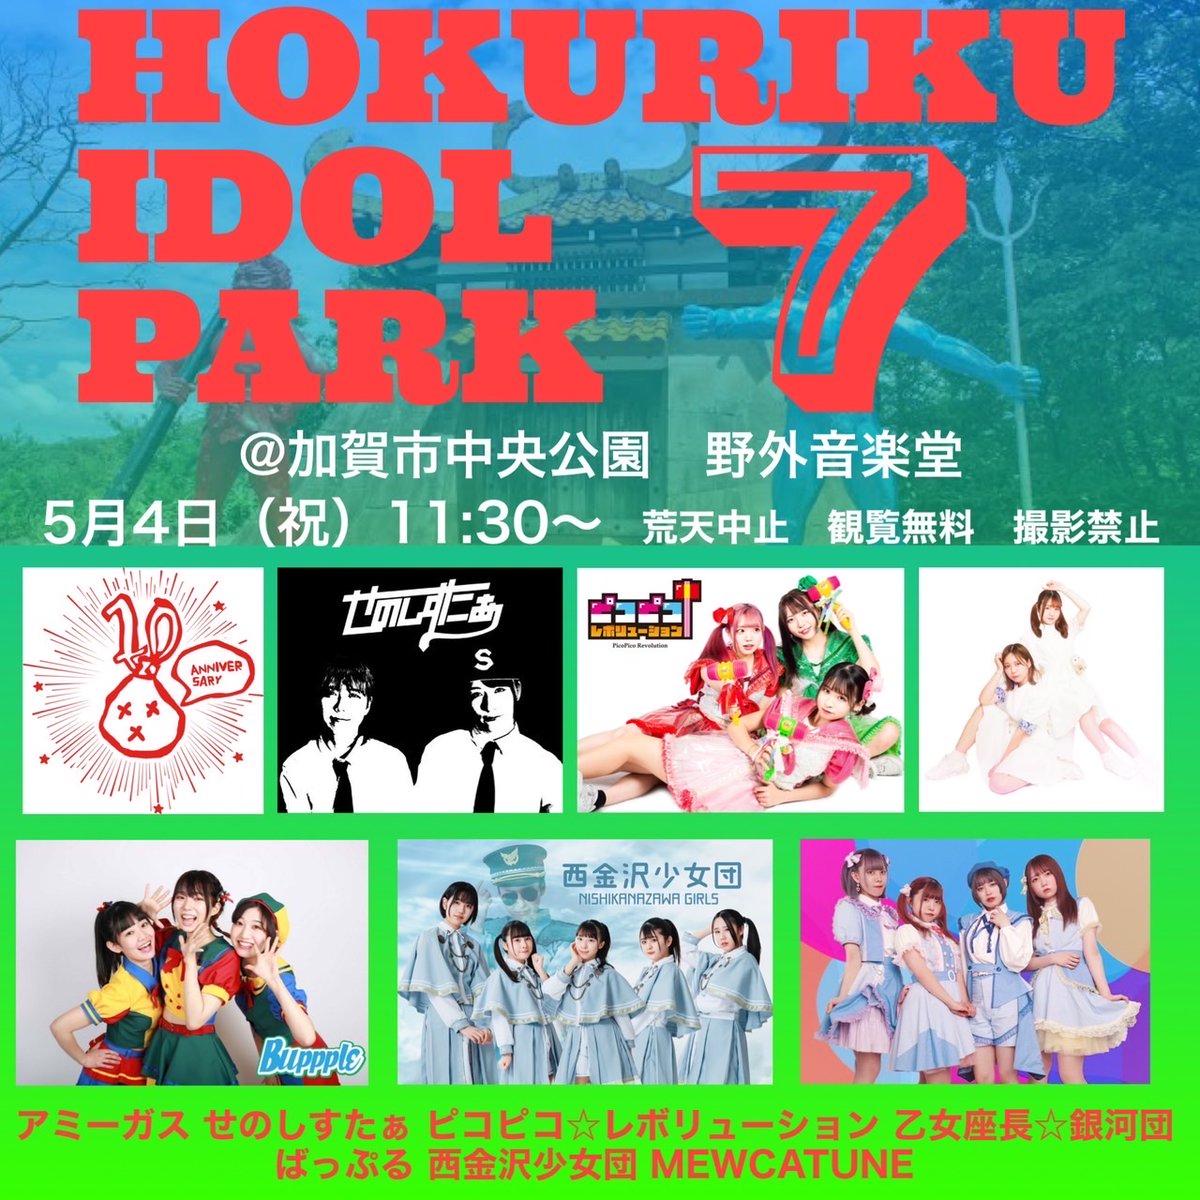 HOKURIKU IDOL PARK 7（石川県） @ 加賀市中央公園 野外音楽堂